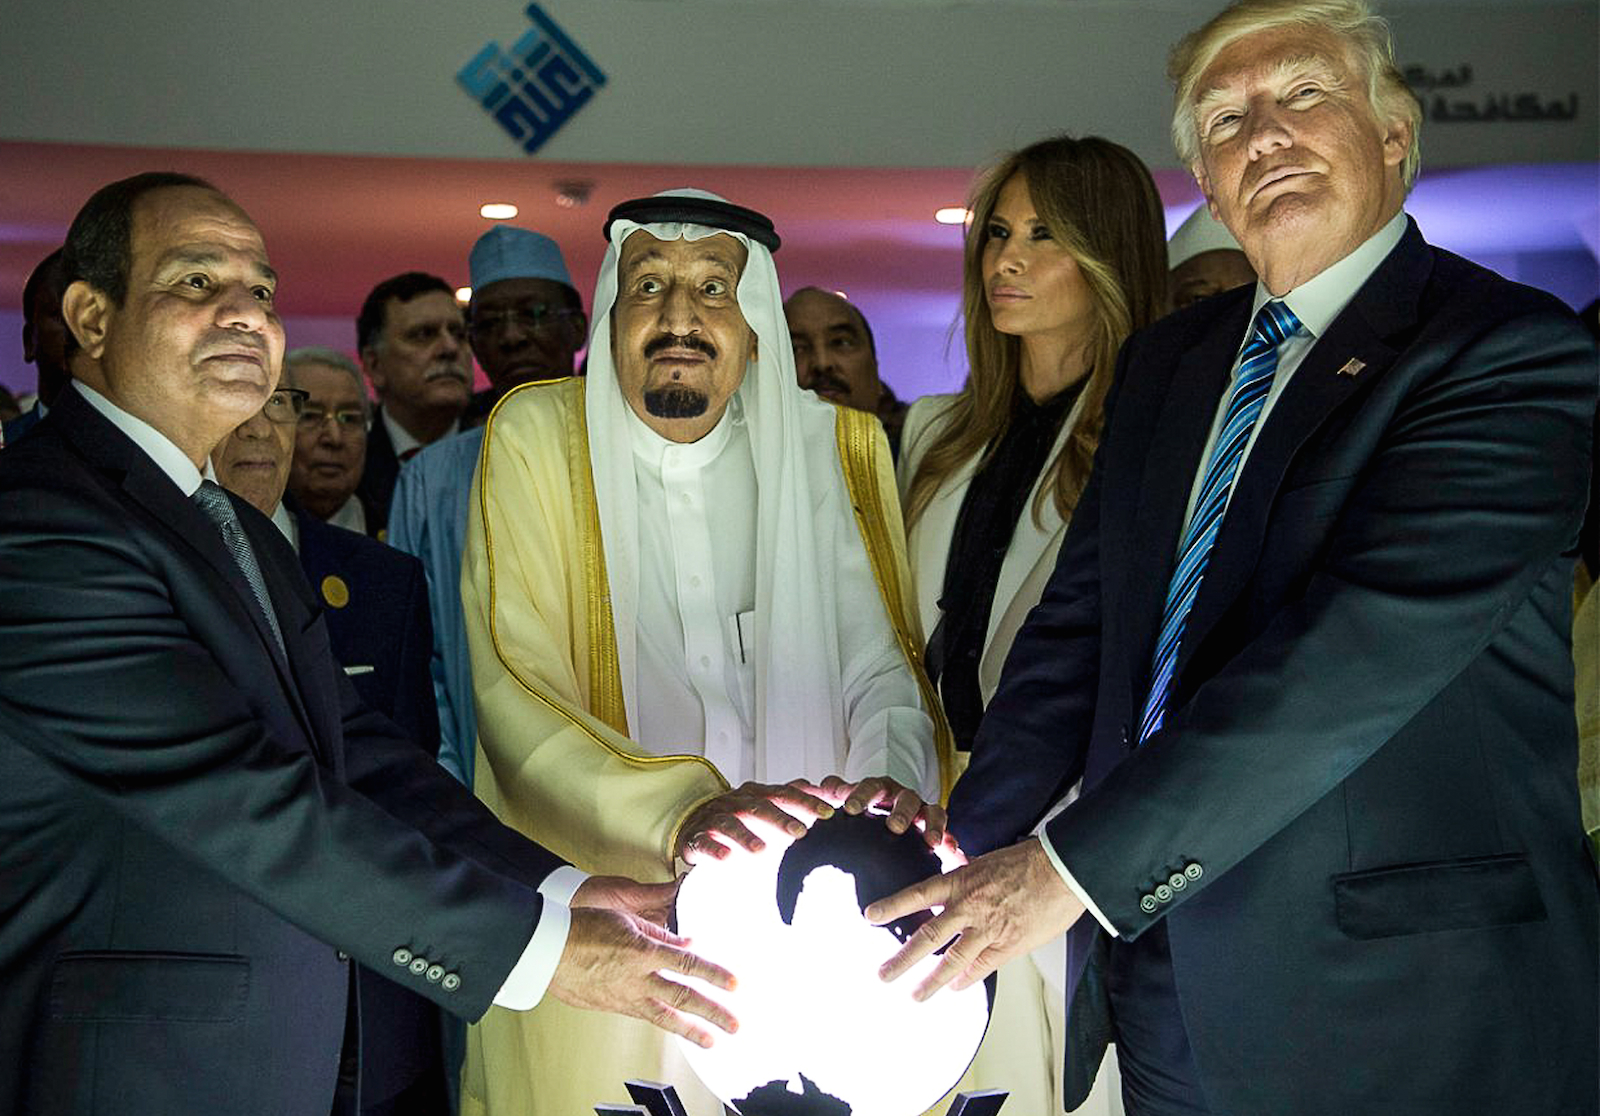 “Alle er klar over Saudi-Arabiens dagsorden. Spørgsmålet er hvilken rolle USA spiller?”Interview med Helle Malmvig om udviklingen i Golfen